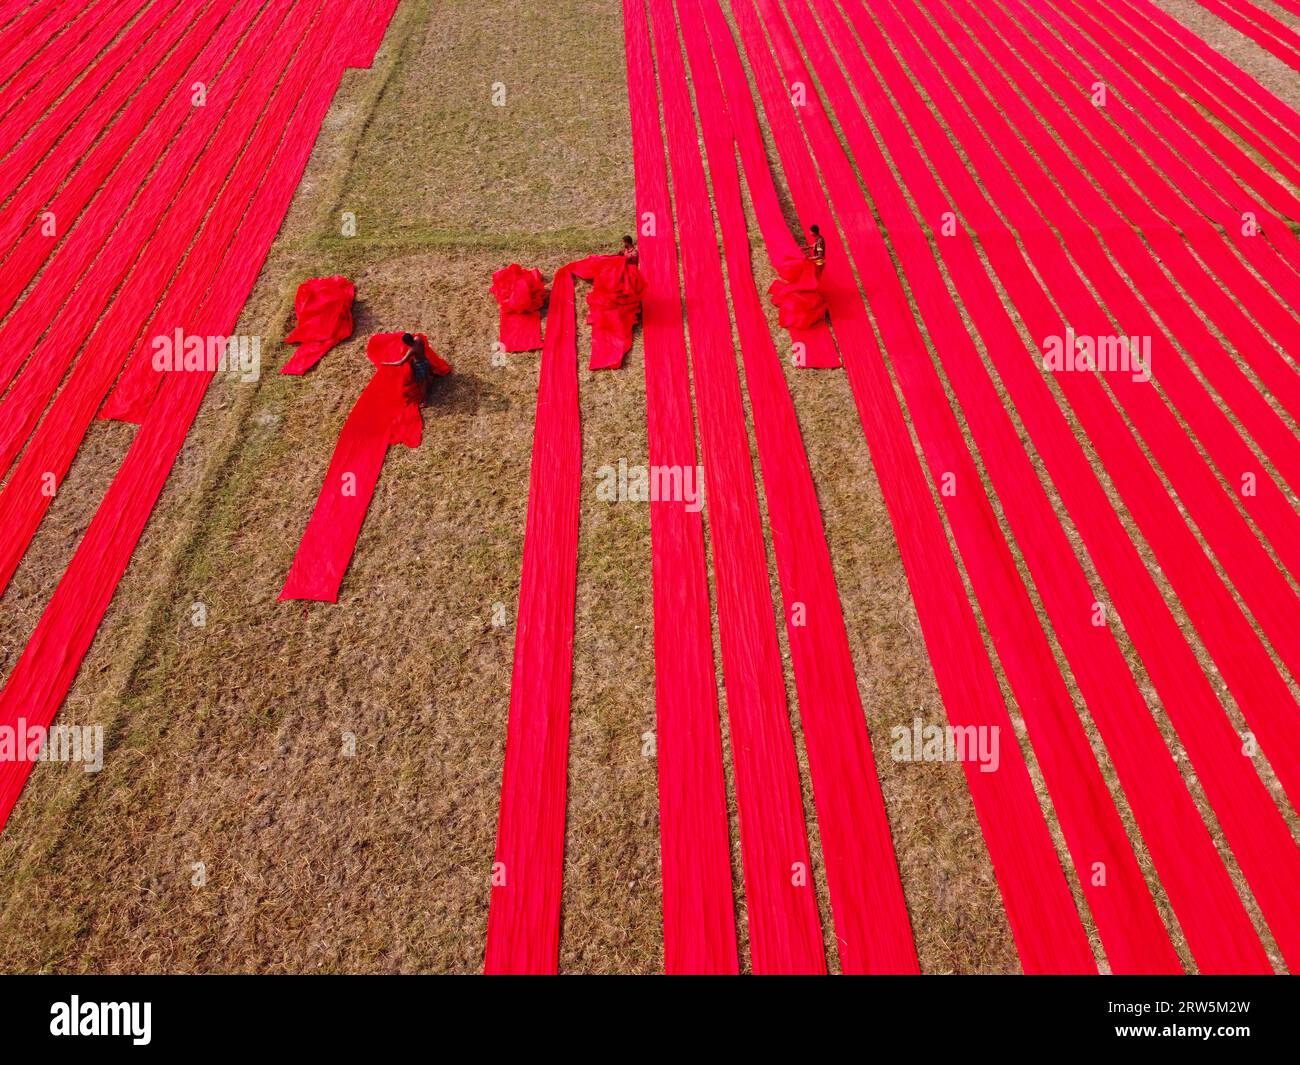 Narsingdi, Bangladesh. 17 septembre 2023. Des centaines de mètres de tissus rouge vif sont disposés en rangées nettes à travers un champ à Narsingdi, au Bangladesh. Connus sous le nom de «Lal Shalu» par les habitants, les longs tissus rouges sont mis à sécher sous le soleil chaud, après avoir été teints avec une couleur rouge vif. L'utilisation de la lumière du soleil pour sécher les tissus réduit les coûts de production car elle est moins chère et plus durable. La méthode de séchage écologique couvre une superficie égale à 5 terrains de football et prend jusqu'à 6 heures à compléter après avoir été placé par les travailleurs au lever du soleil. Crédit : Joy Saha/Alamy Live News Banque D'Images